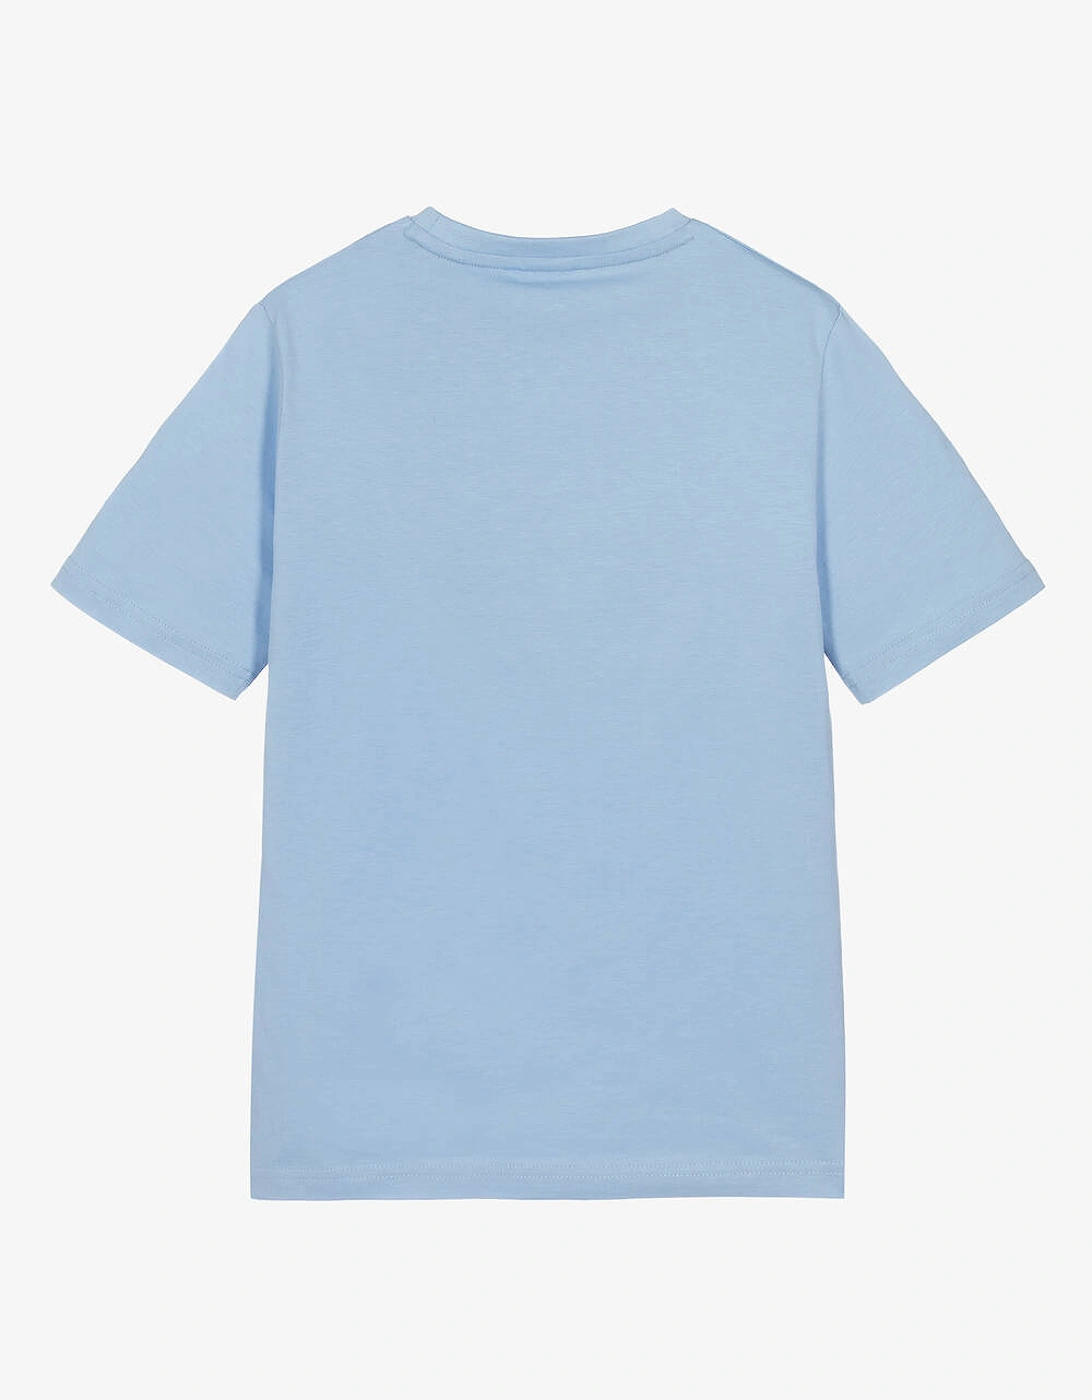 Boys Pale Blue Classic T shirt